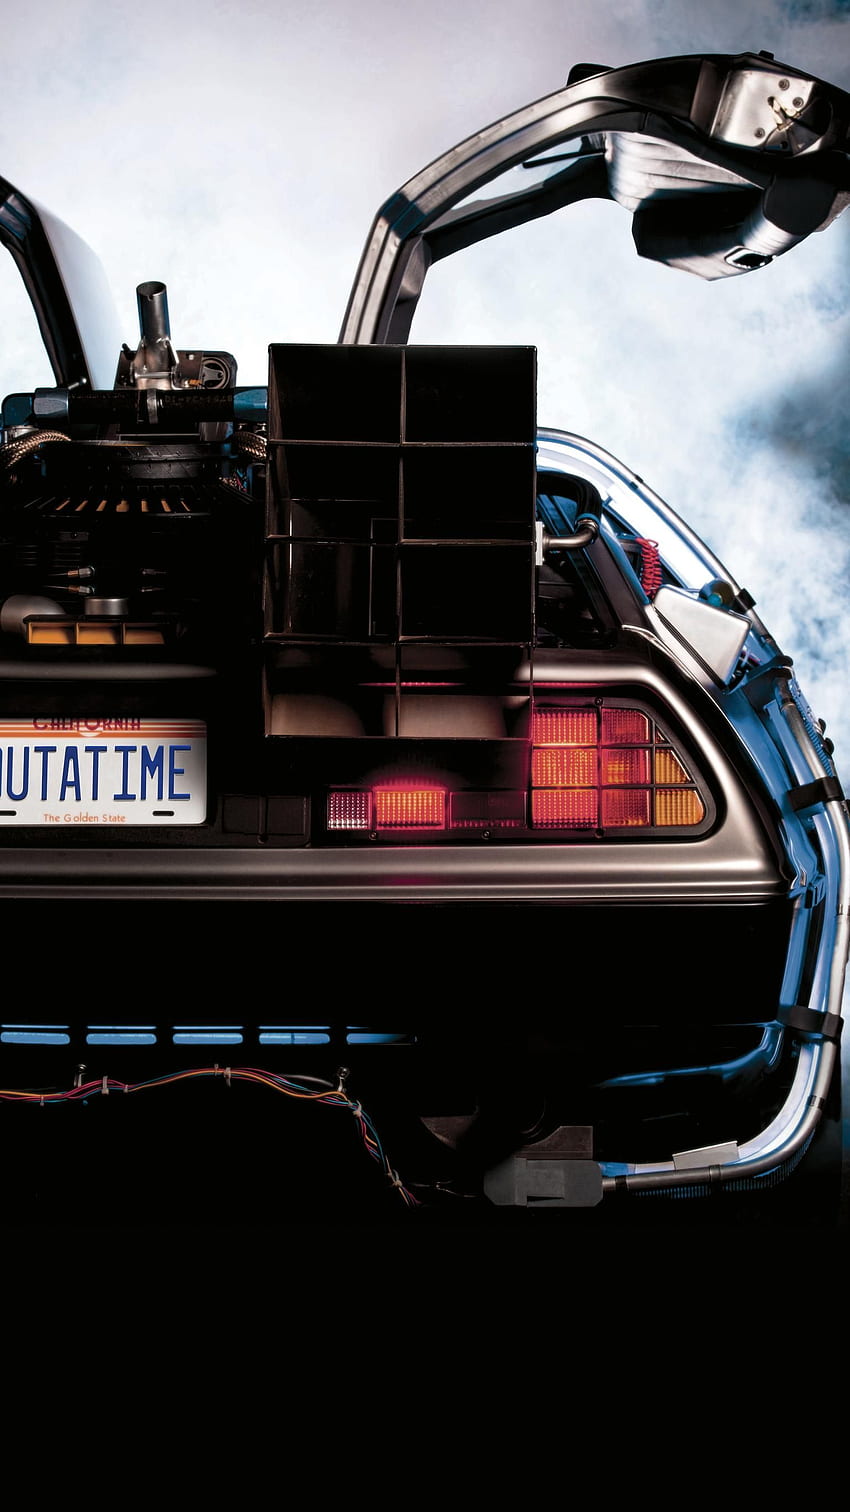 Powrót do przyszłości (1985) Telefon. Filmomania. Przyszłość, samochód przyszłości, powrót do przyszłości, iPhone DeLorean Tapeta na telefon HD